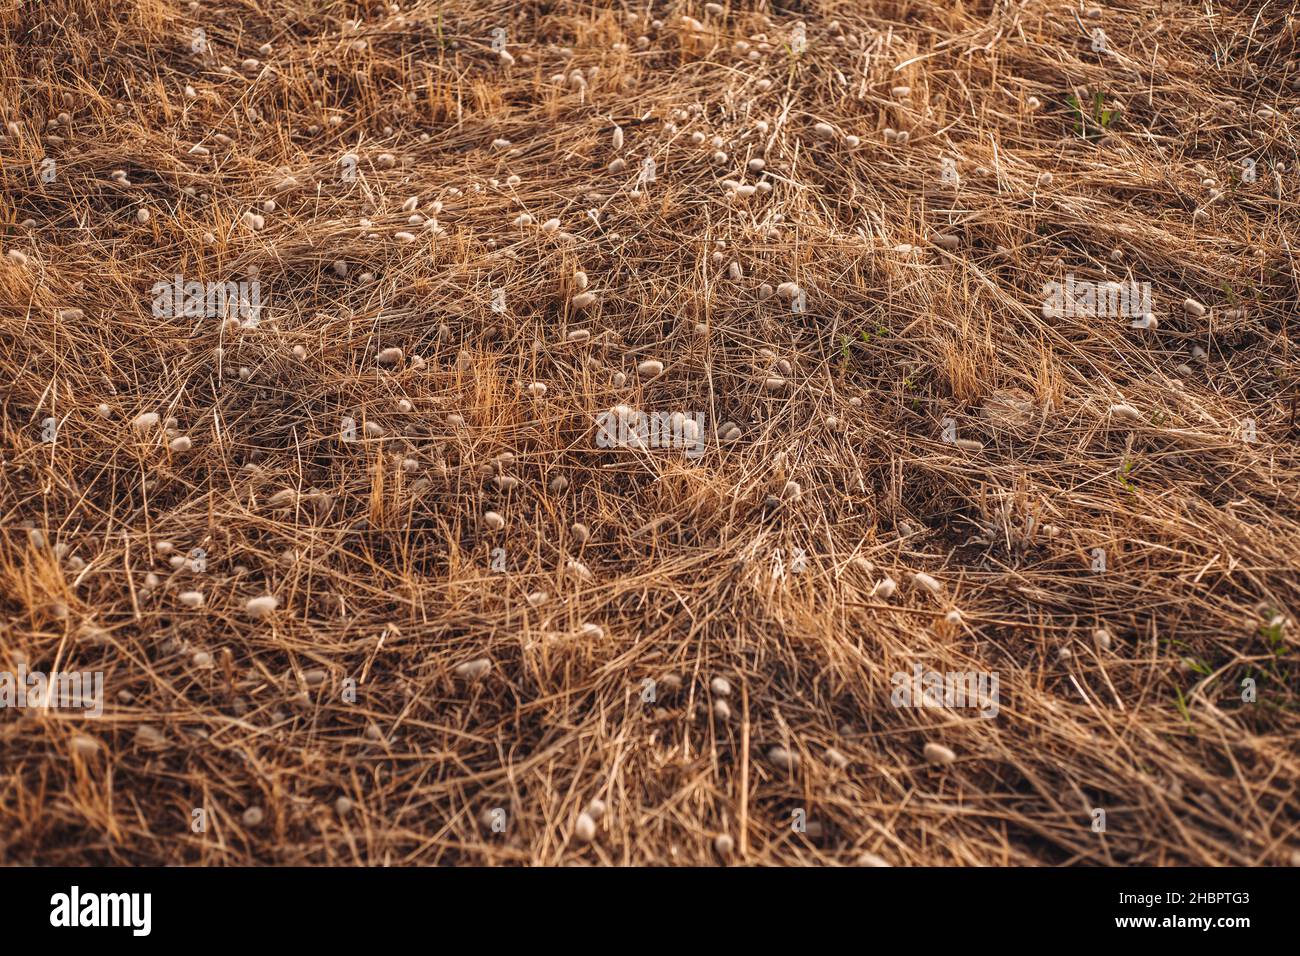 Dried plants covering the countryside in Gagliano del Capo, Puglia region, Italy Stock Photo